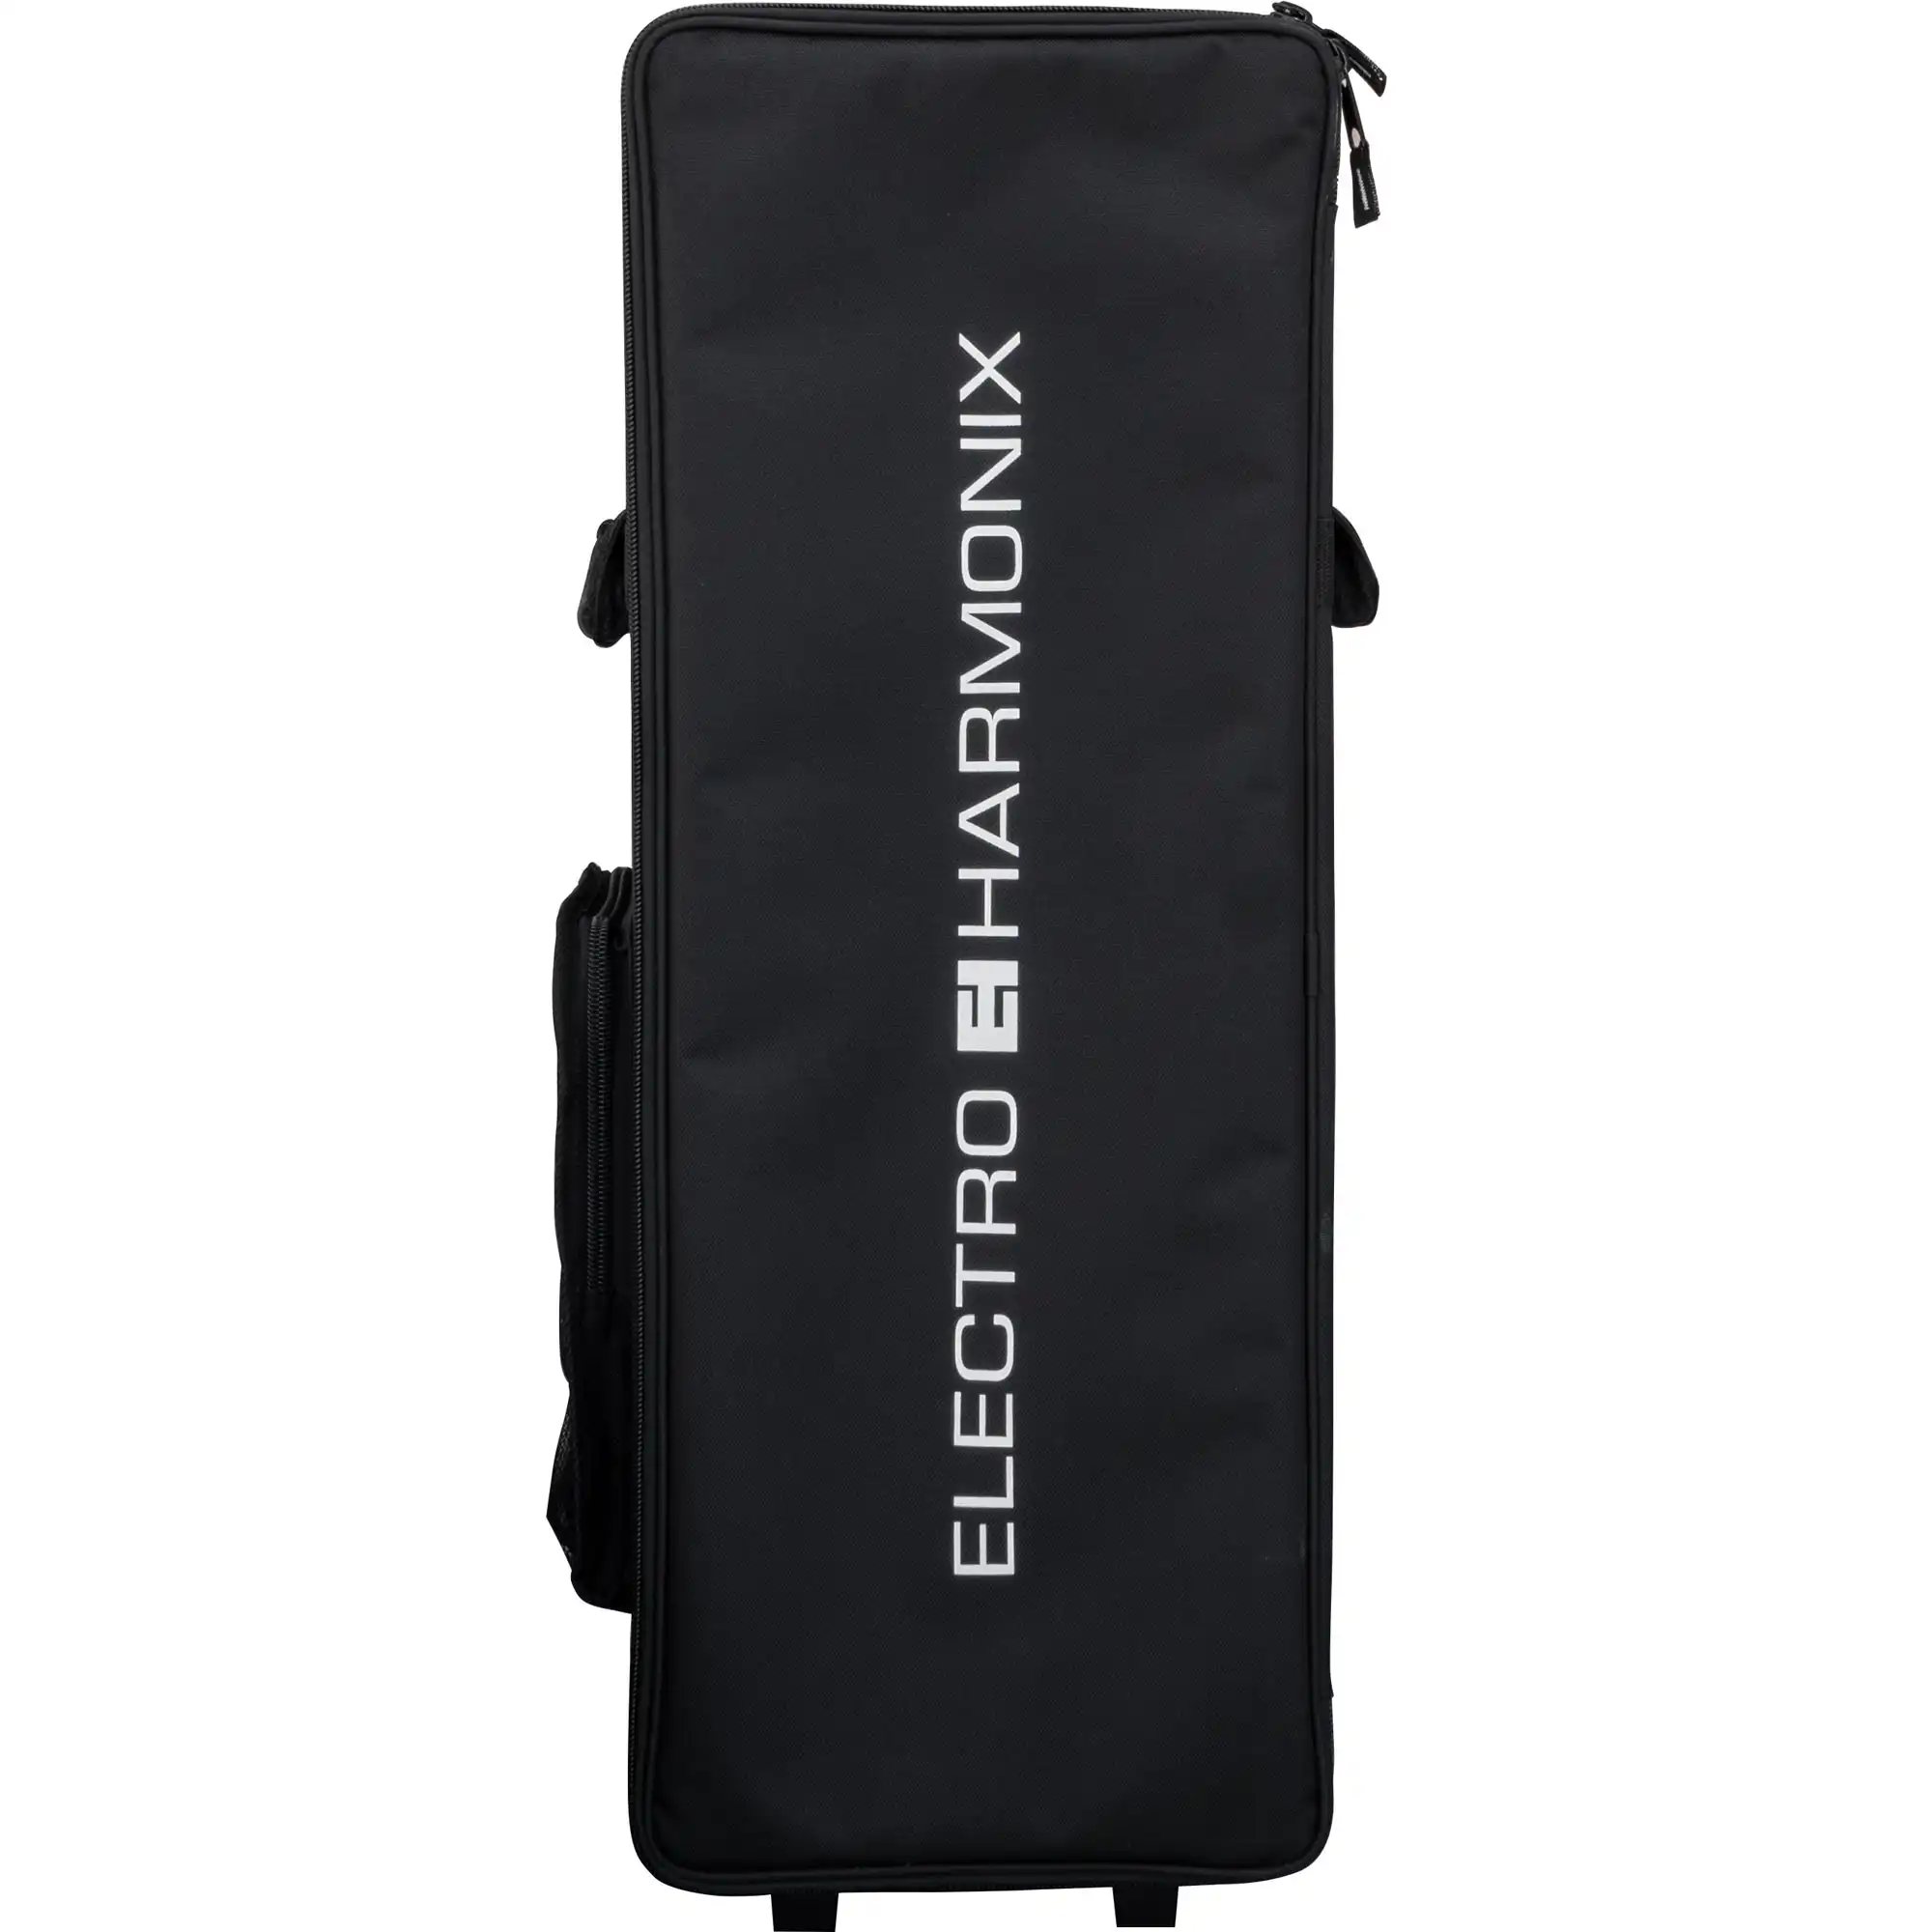 electro-harmonix amp head case